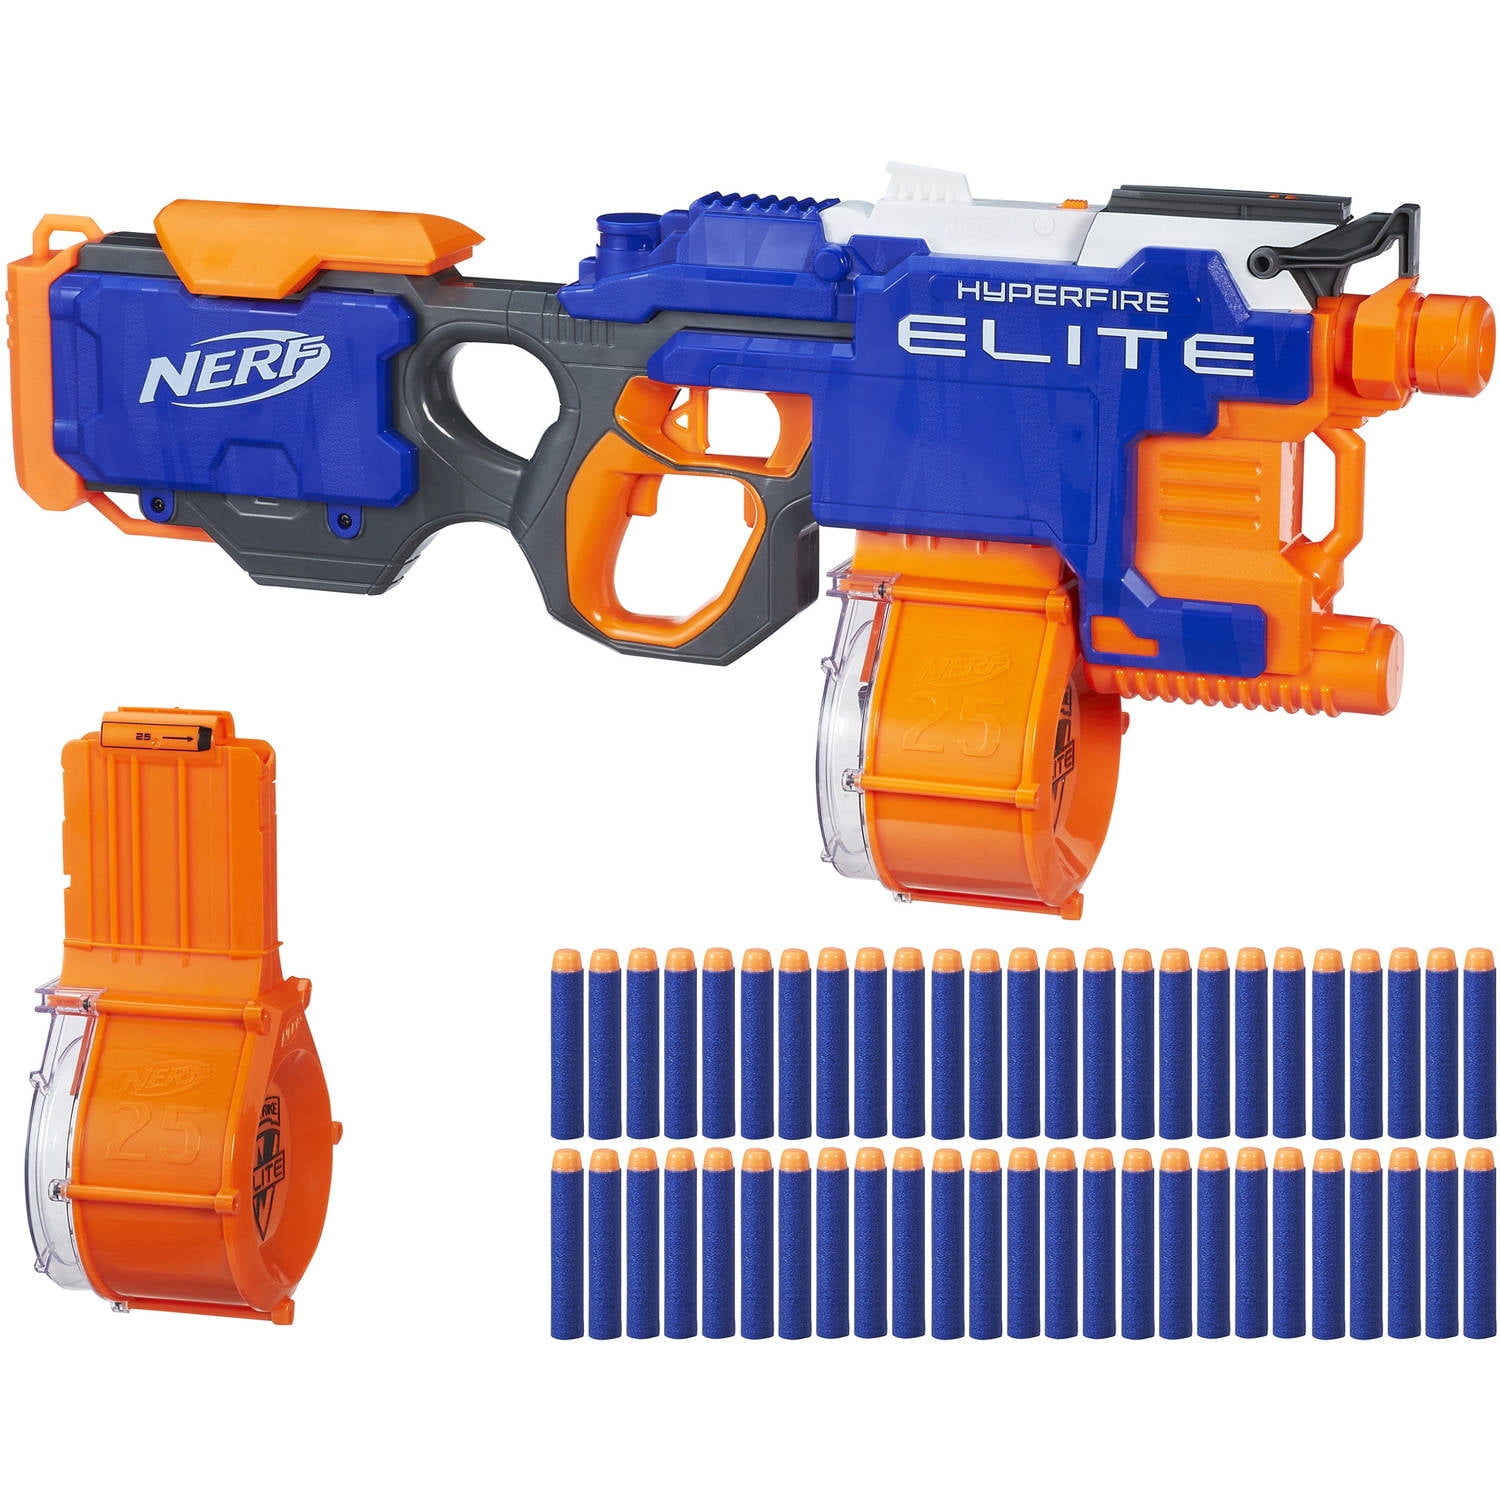 Nerf Gun N-Strike Elite HyperFire Blaster Blaster Gun fire up to 90ft w/25 darts 